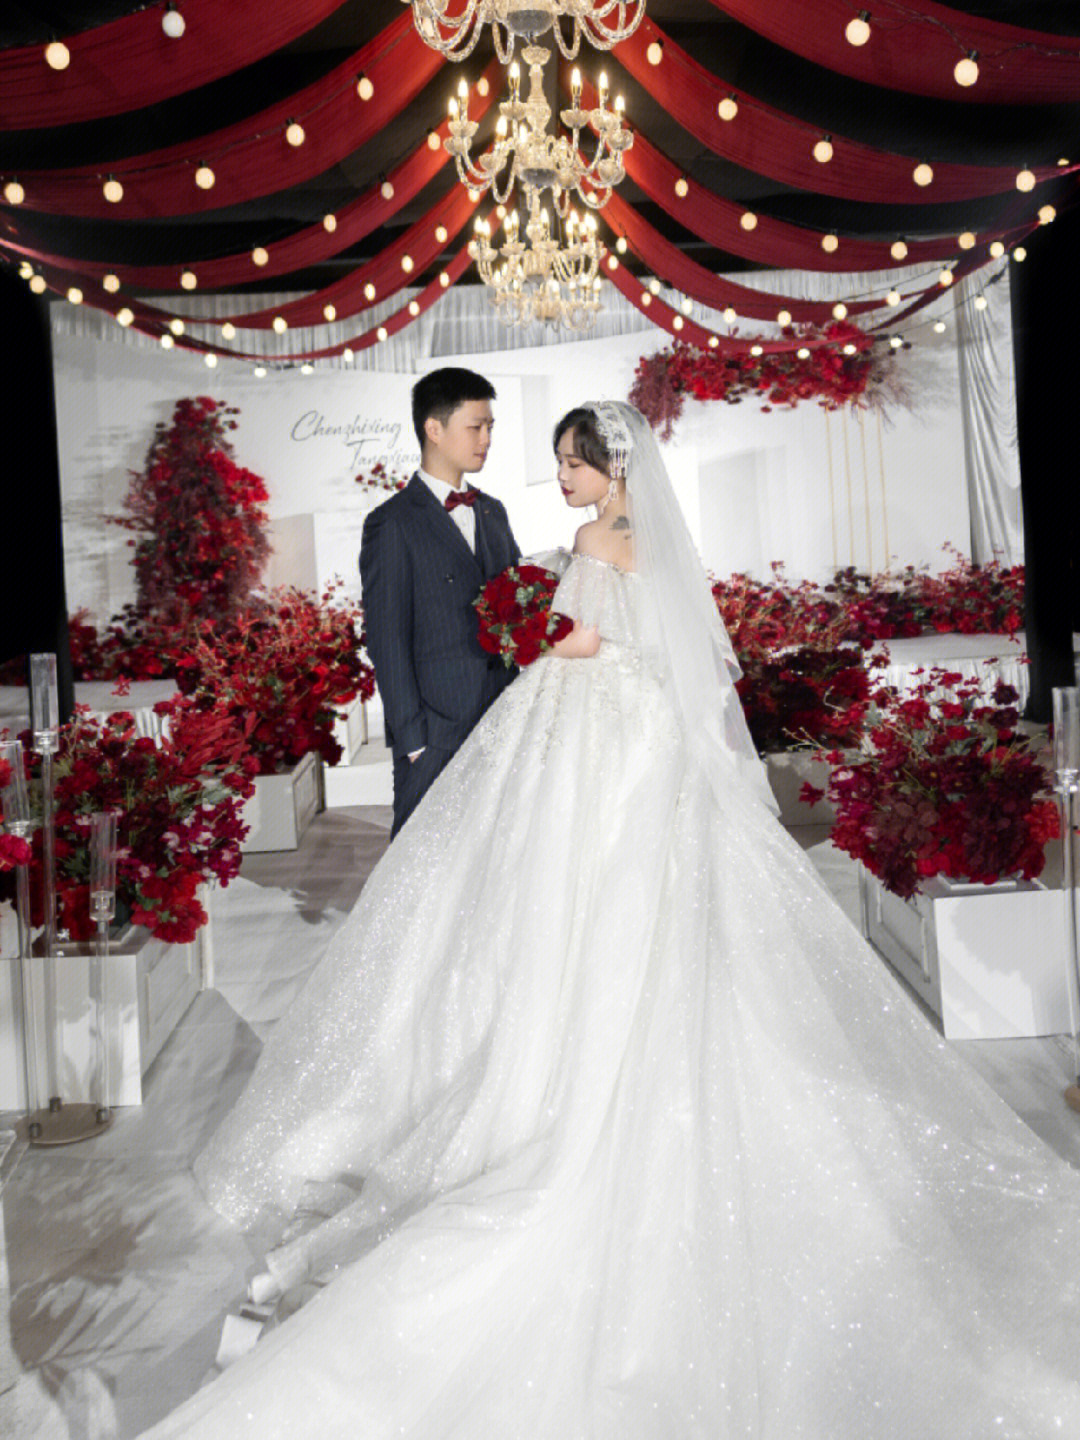 极简风,红白,韩式96婚礼风格:红白韩式极简风室内婚礼96酒店:恒大